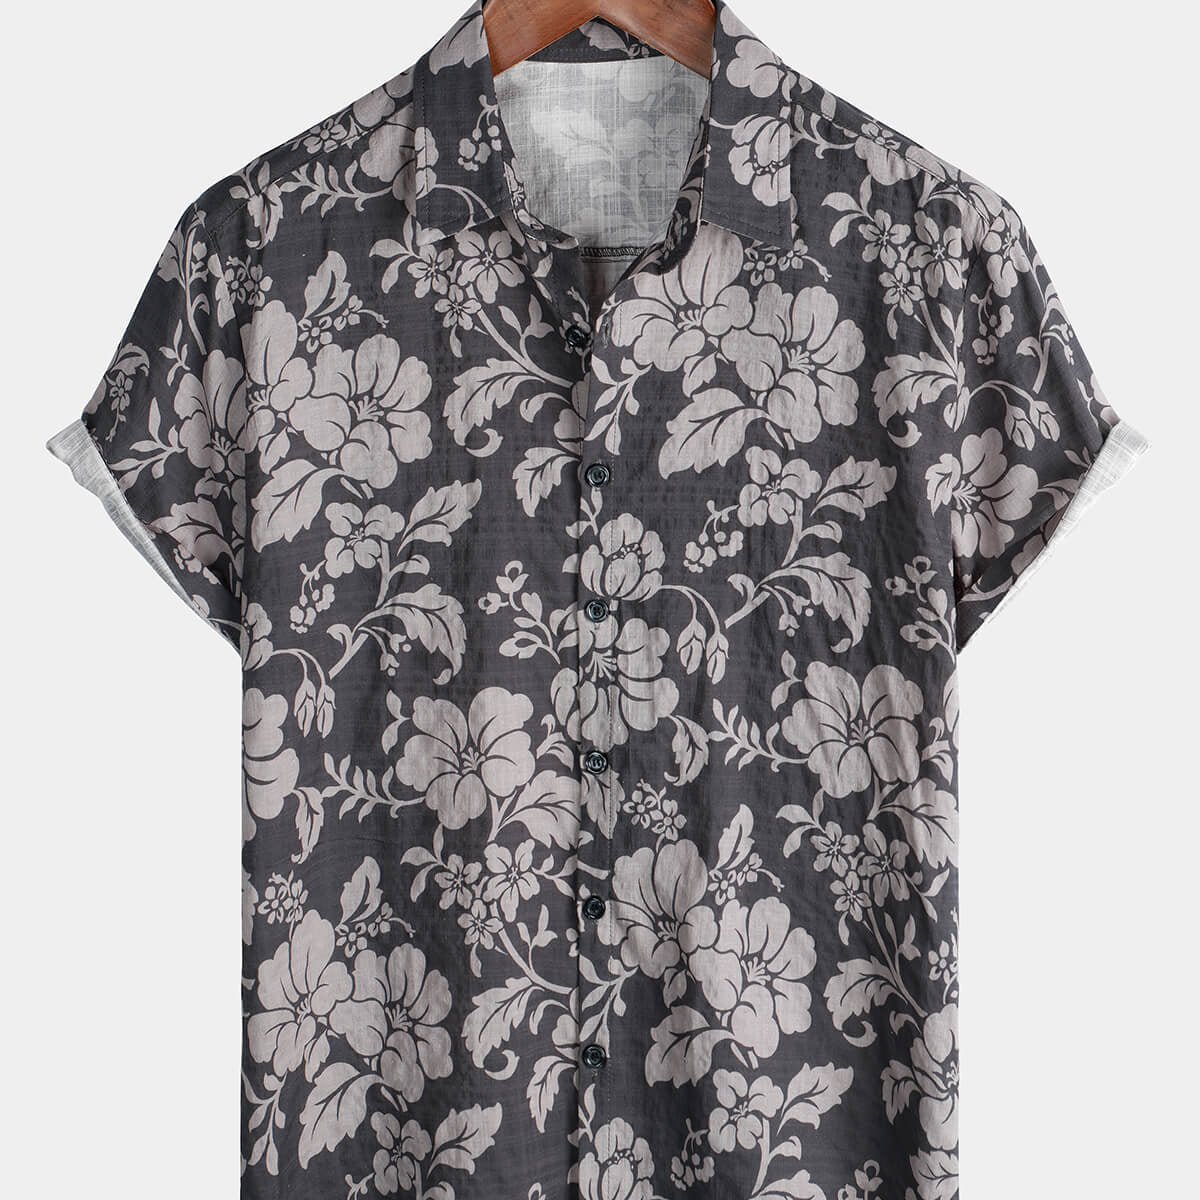 Men's Retro Floral Hawaiian Short Sleeve Button Up Summer Shirt